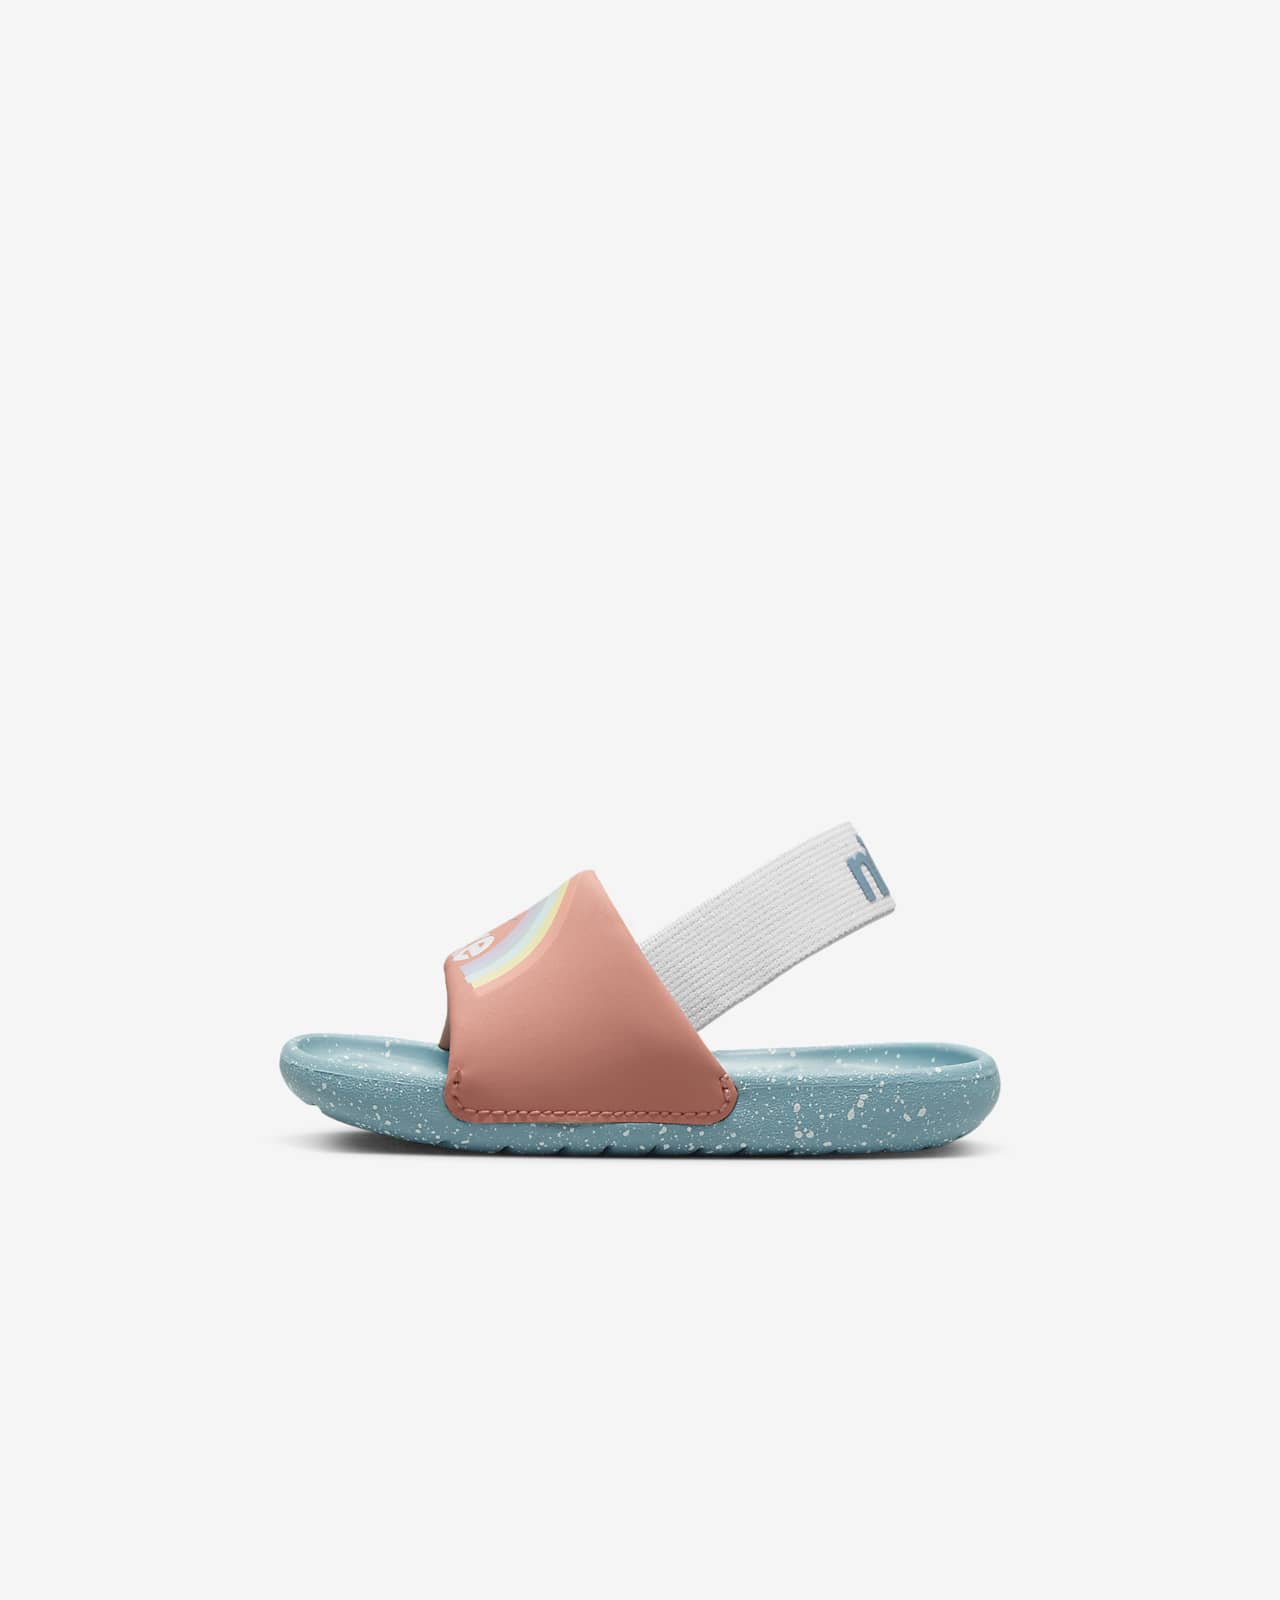 Nike Kawa SE Schuh für Babys und Kleinkinder